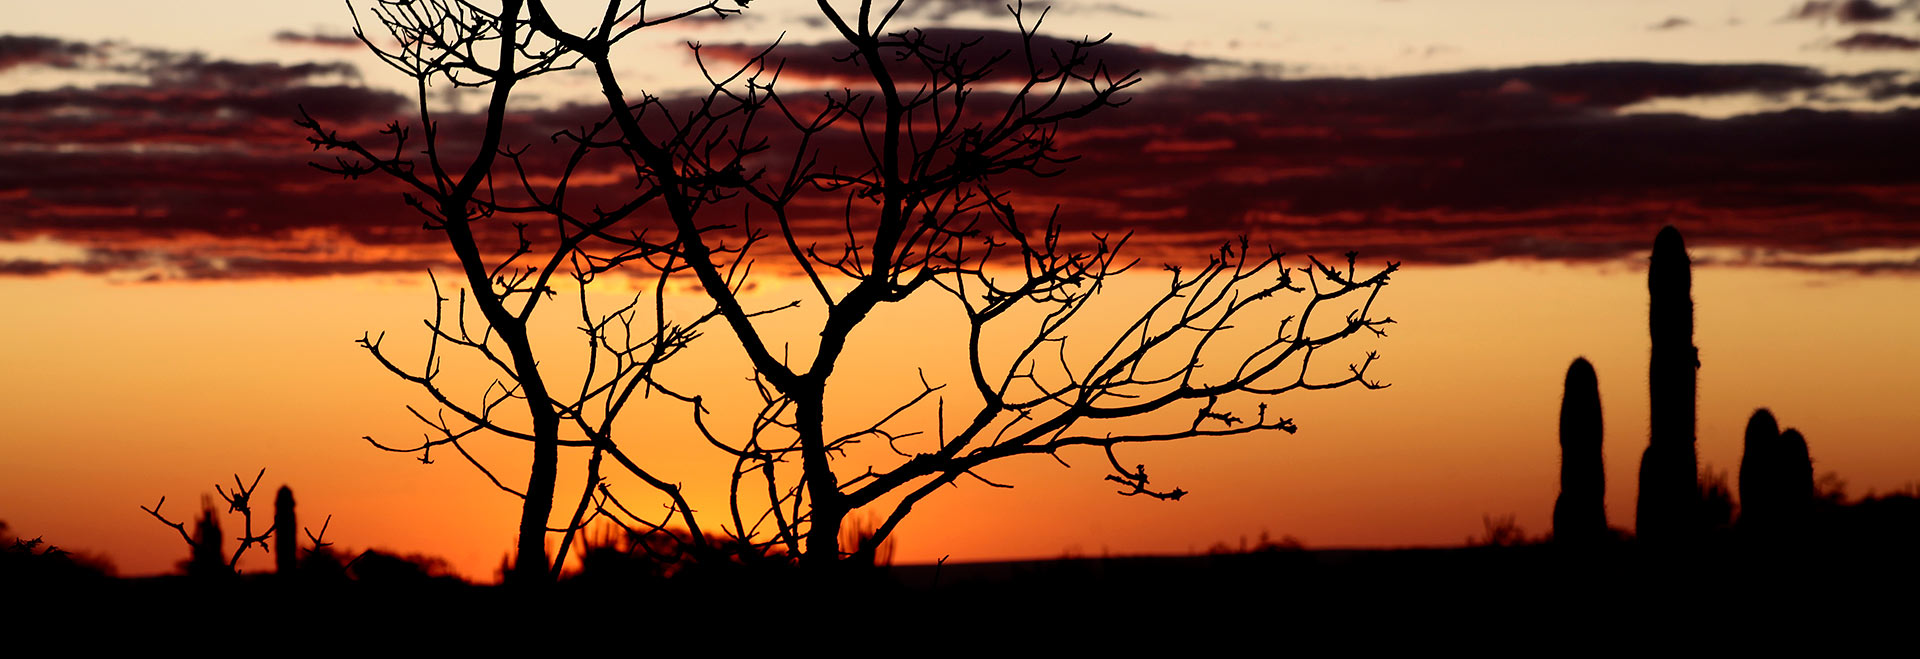 Audiodescrição. Foto: Willianilson Pessoa. Imagem artística e panorâmica de pôr do sol em área de vegetação na Caatinga, sendo que, ao centro, a média distância, há uma árvore de grande porte com vários galhos secos. À direita da foto, alguns mandacarus. Há nuvens no céu. A imagem é construída em tons de preto, abaixo, laranja, ao centro, e vermelho escuro acima. Imagem 1 de 1